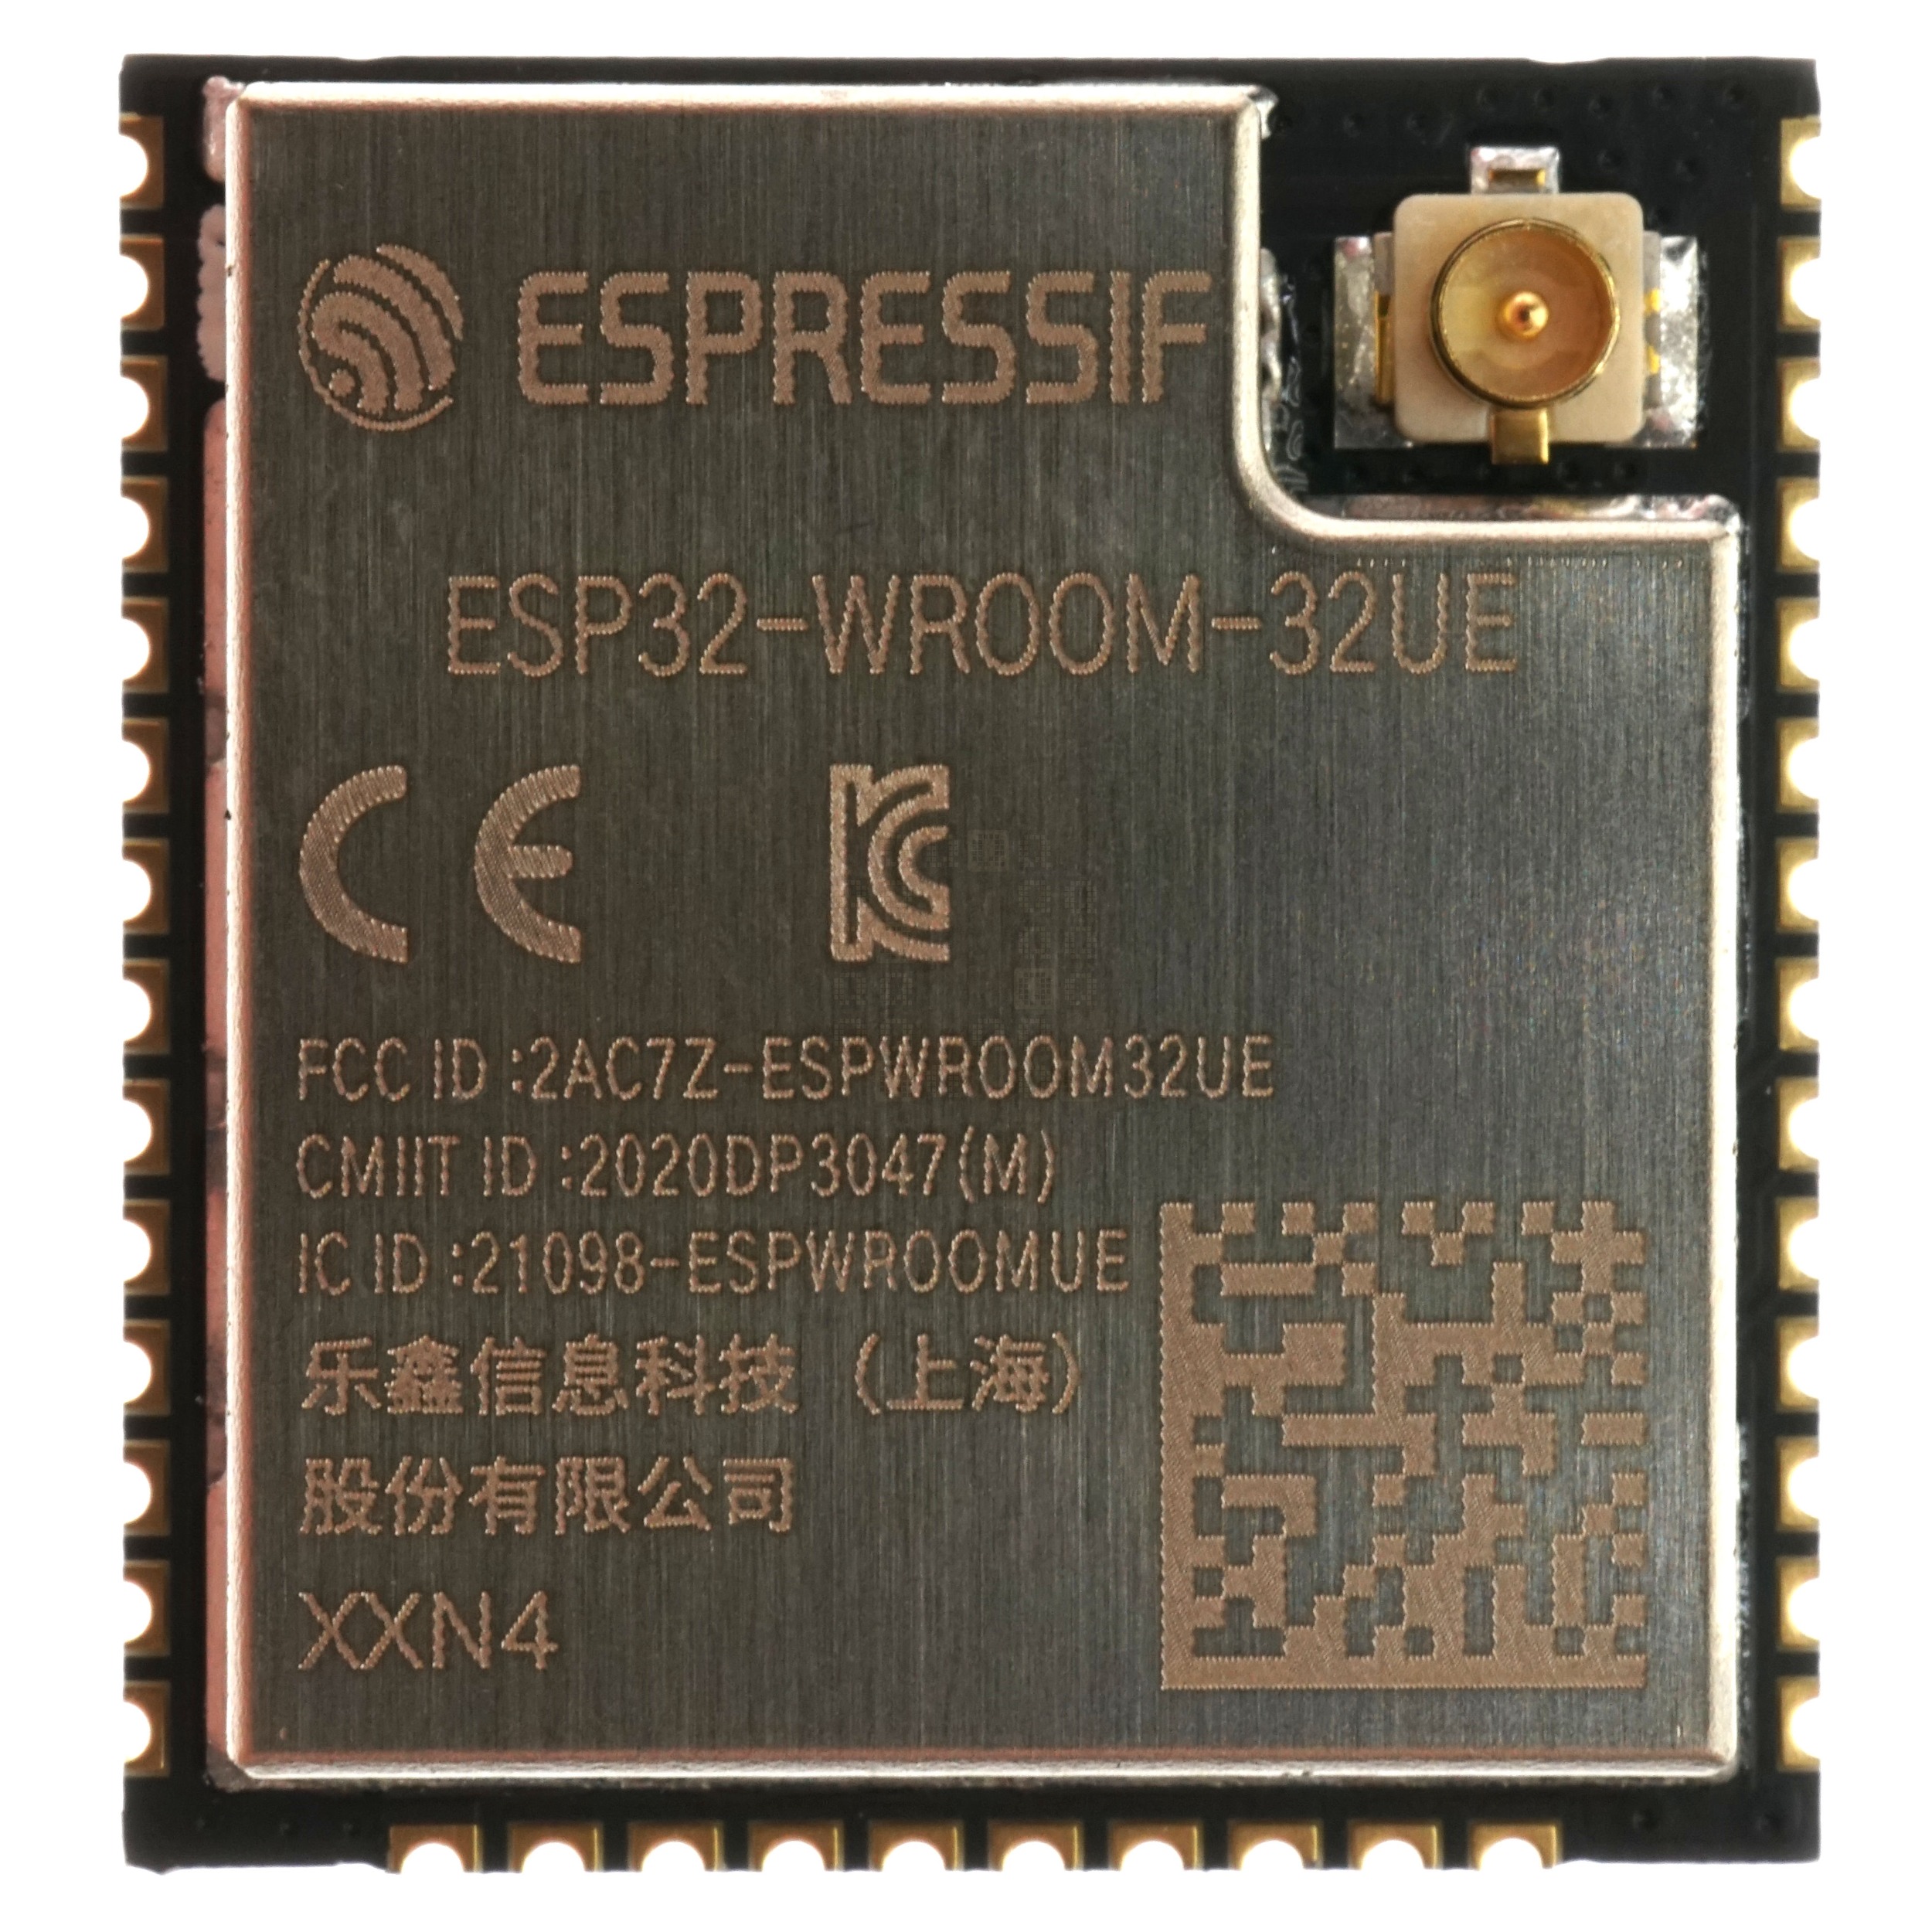 Espressif ESP32-WROOM-32UE-N4 Microprocessor with Wi-Fi & Bluetooth, 4MB Flash